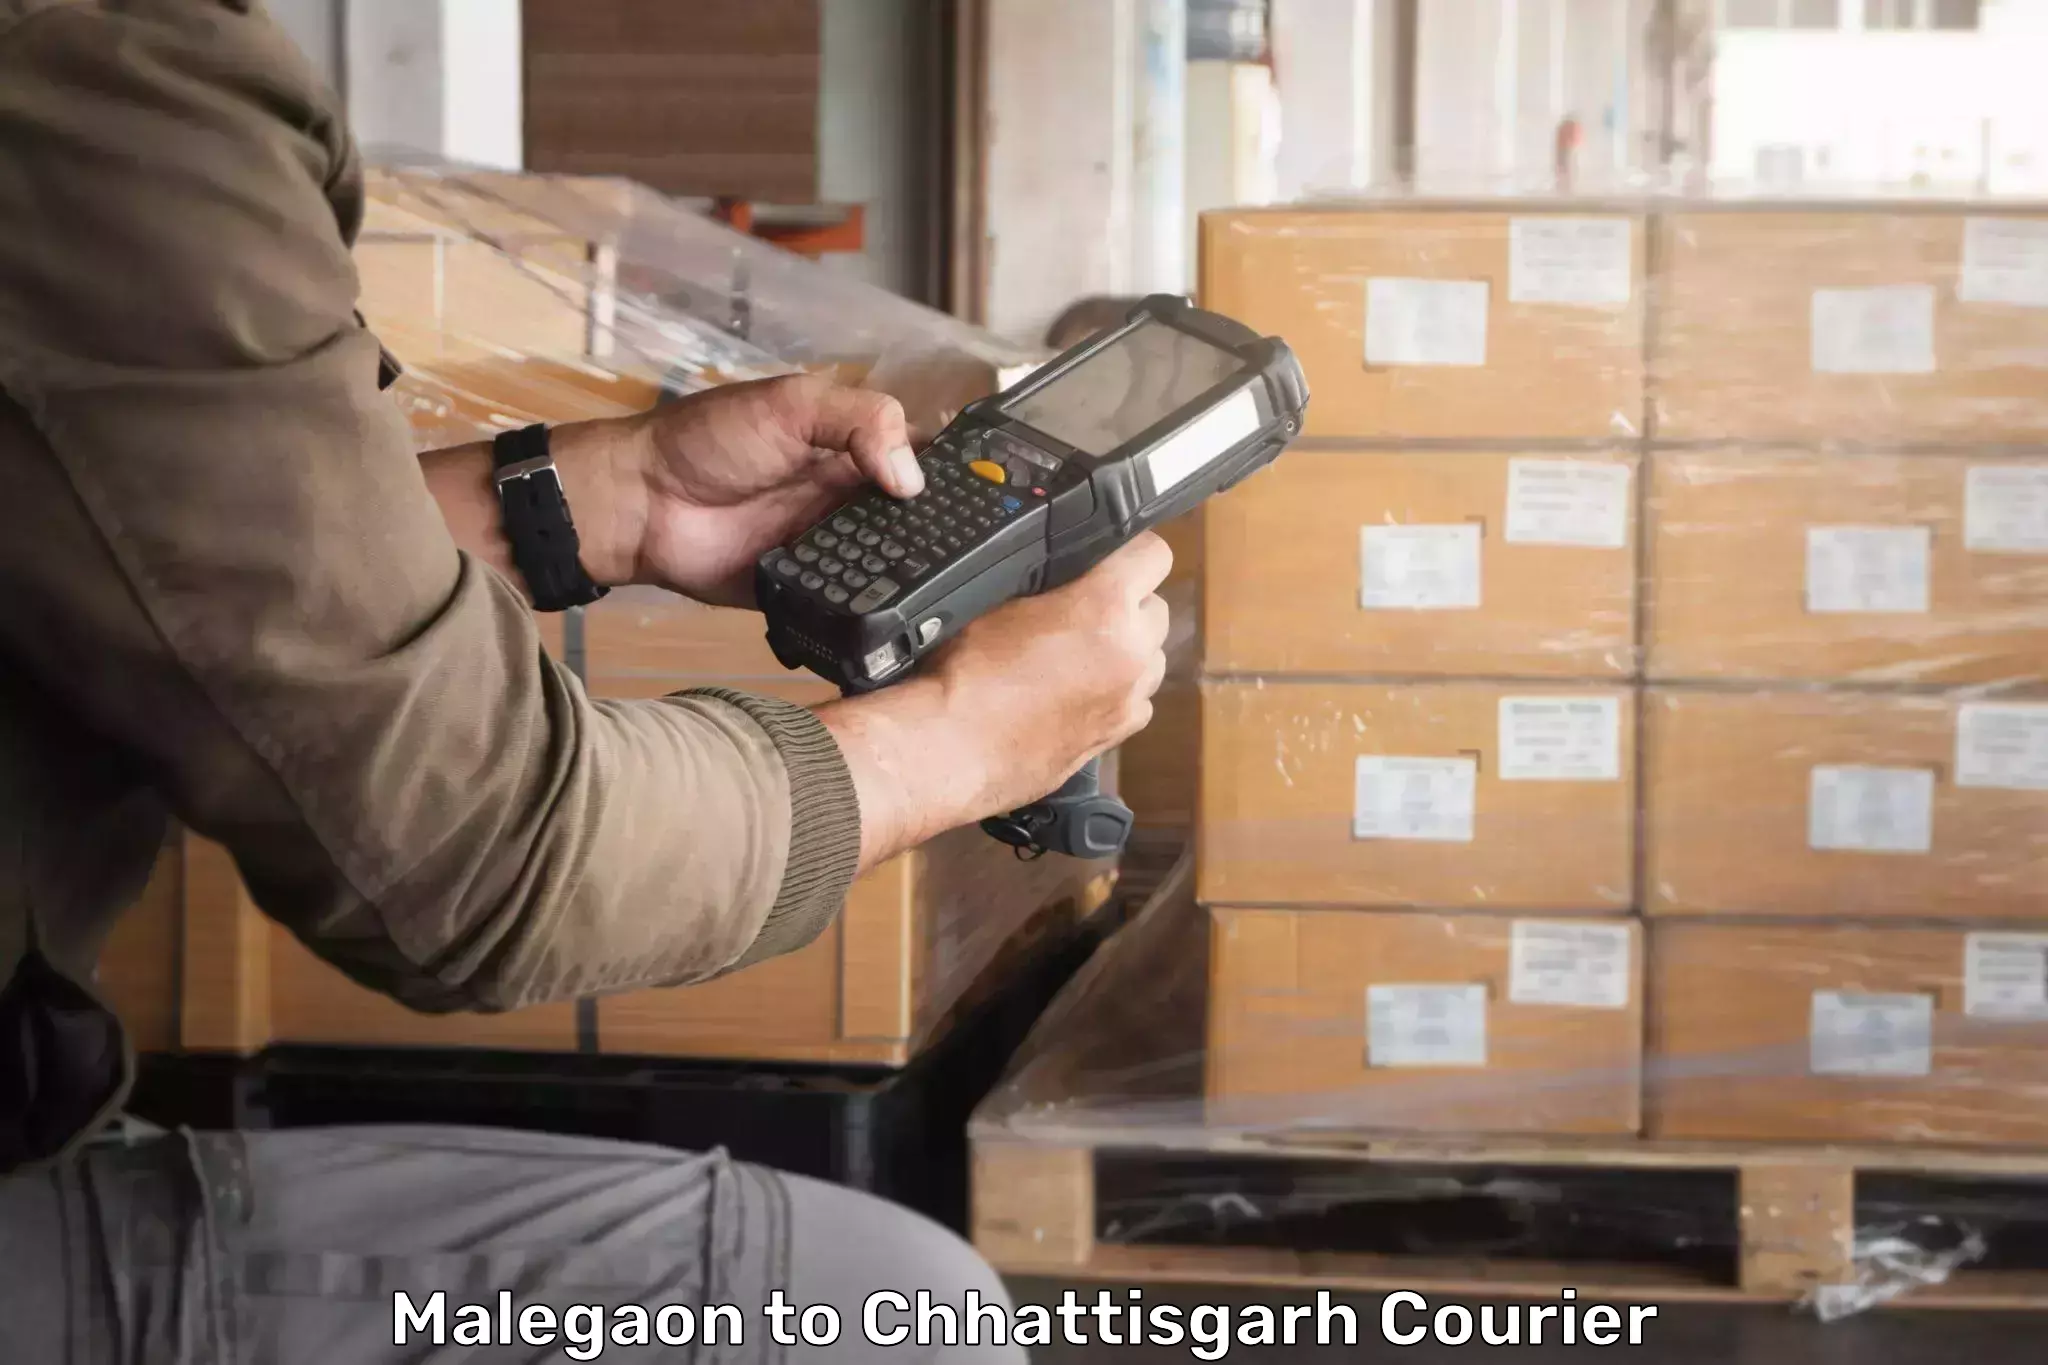 Courier service comparison Malegaon to Ambikapur